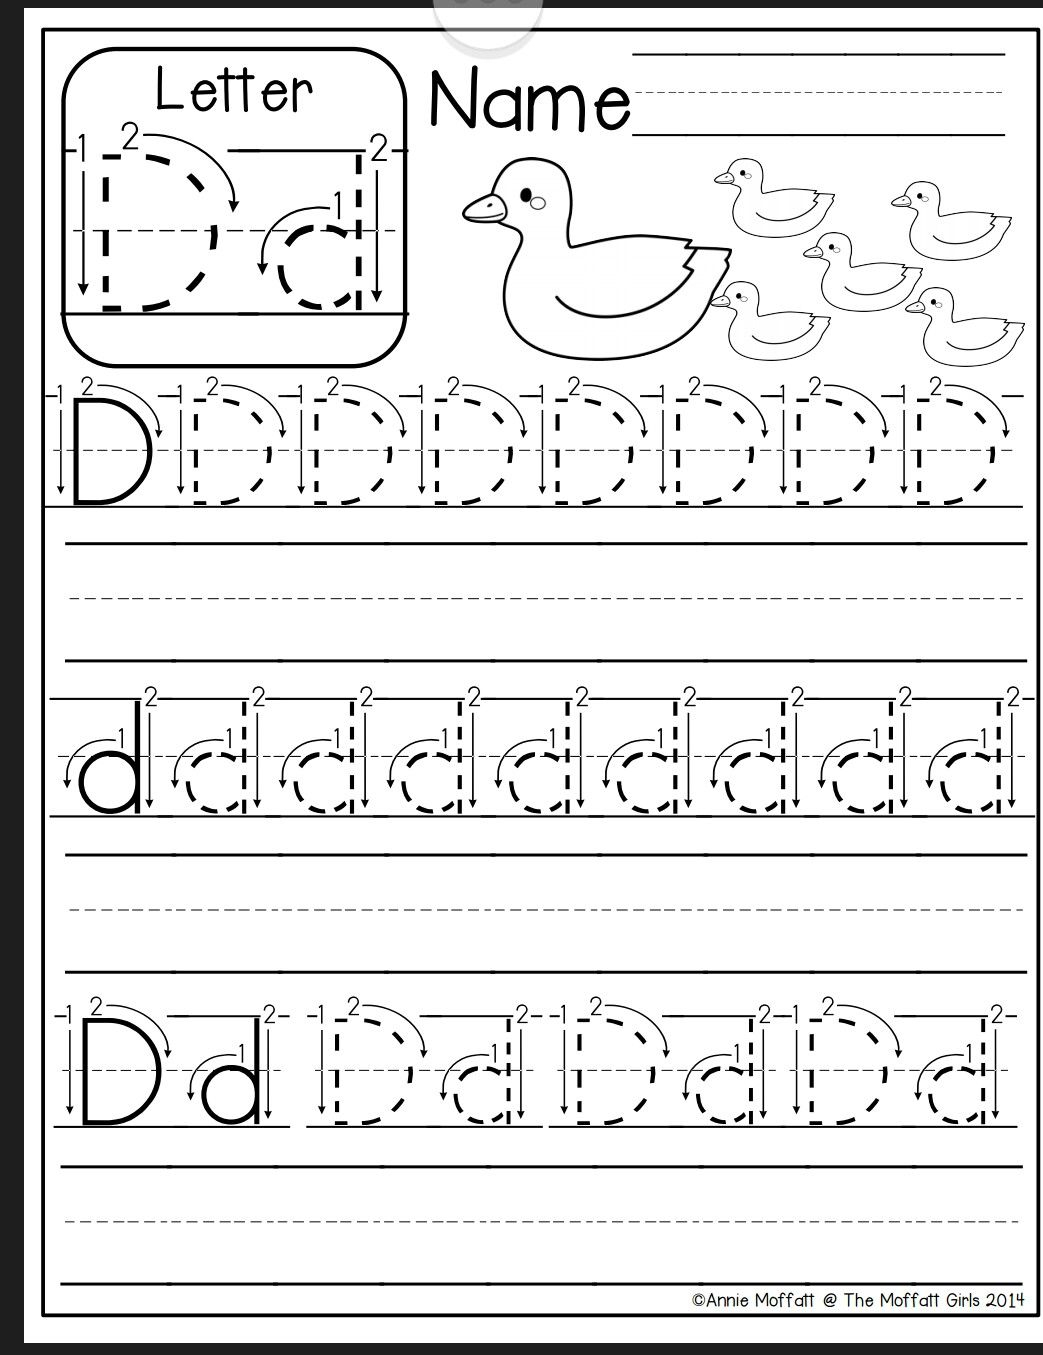 Letter D Worksheer | Printable Preschool Worksheets throughout Letter D Worksheets For Pre K